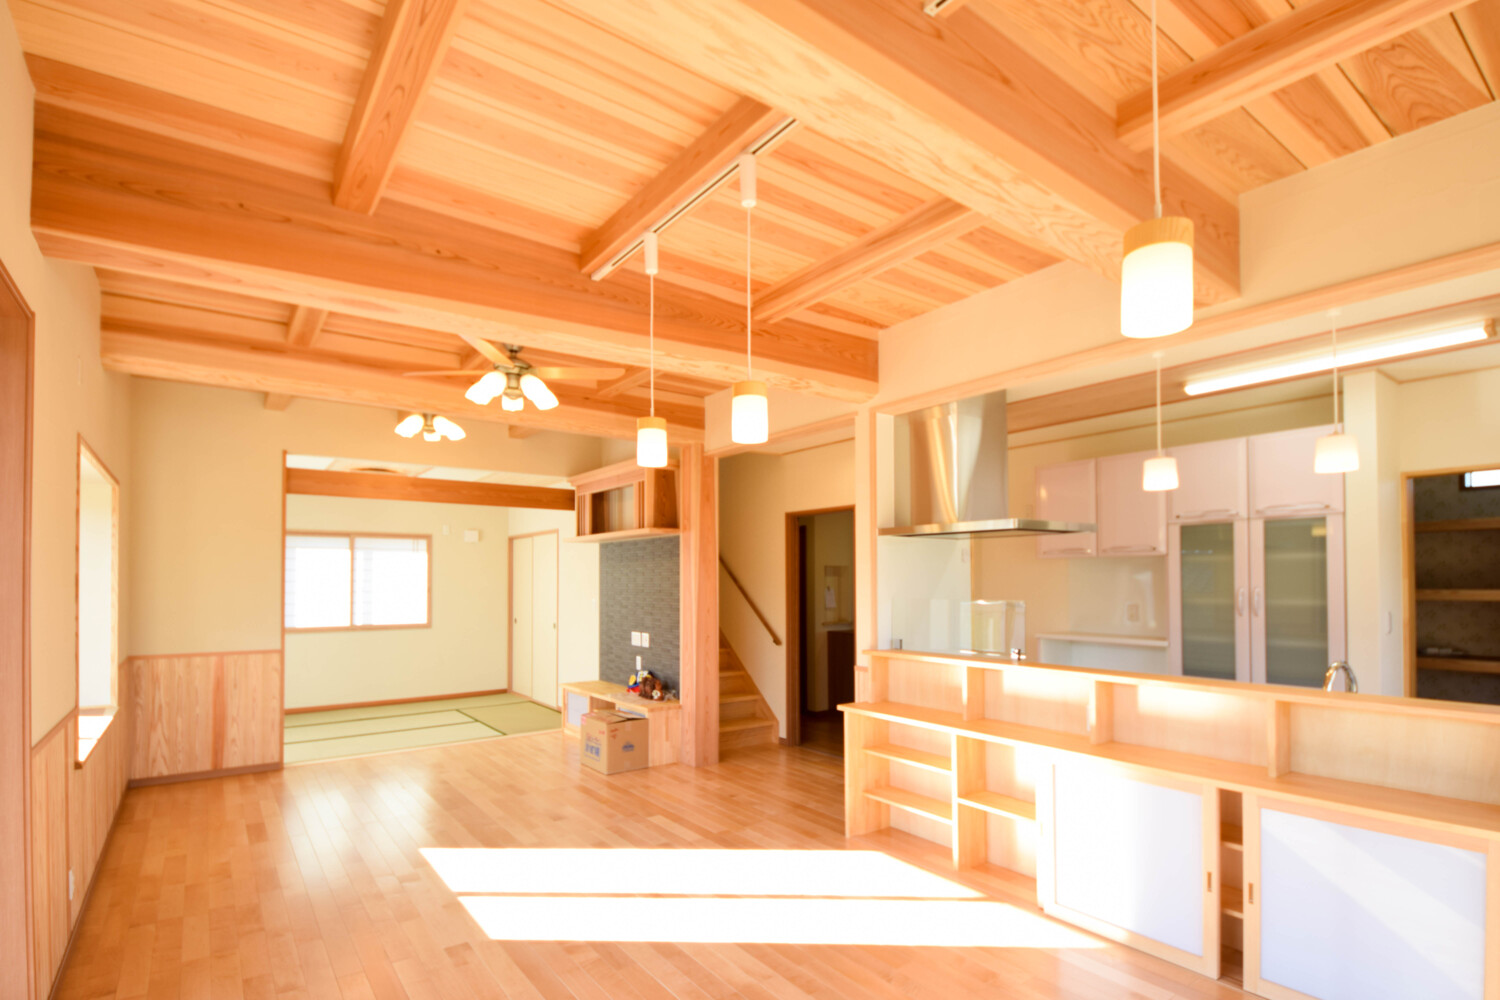 光りがやさしく室内に入って快適。心地よく暮らしやすい木の家